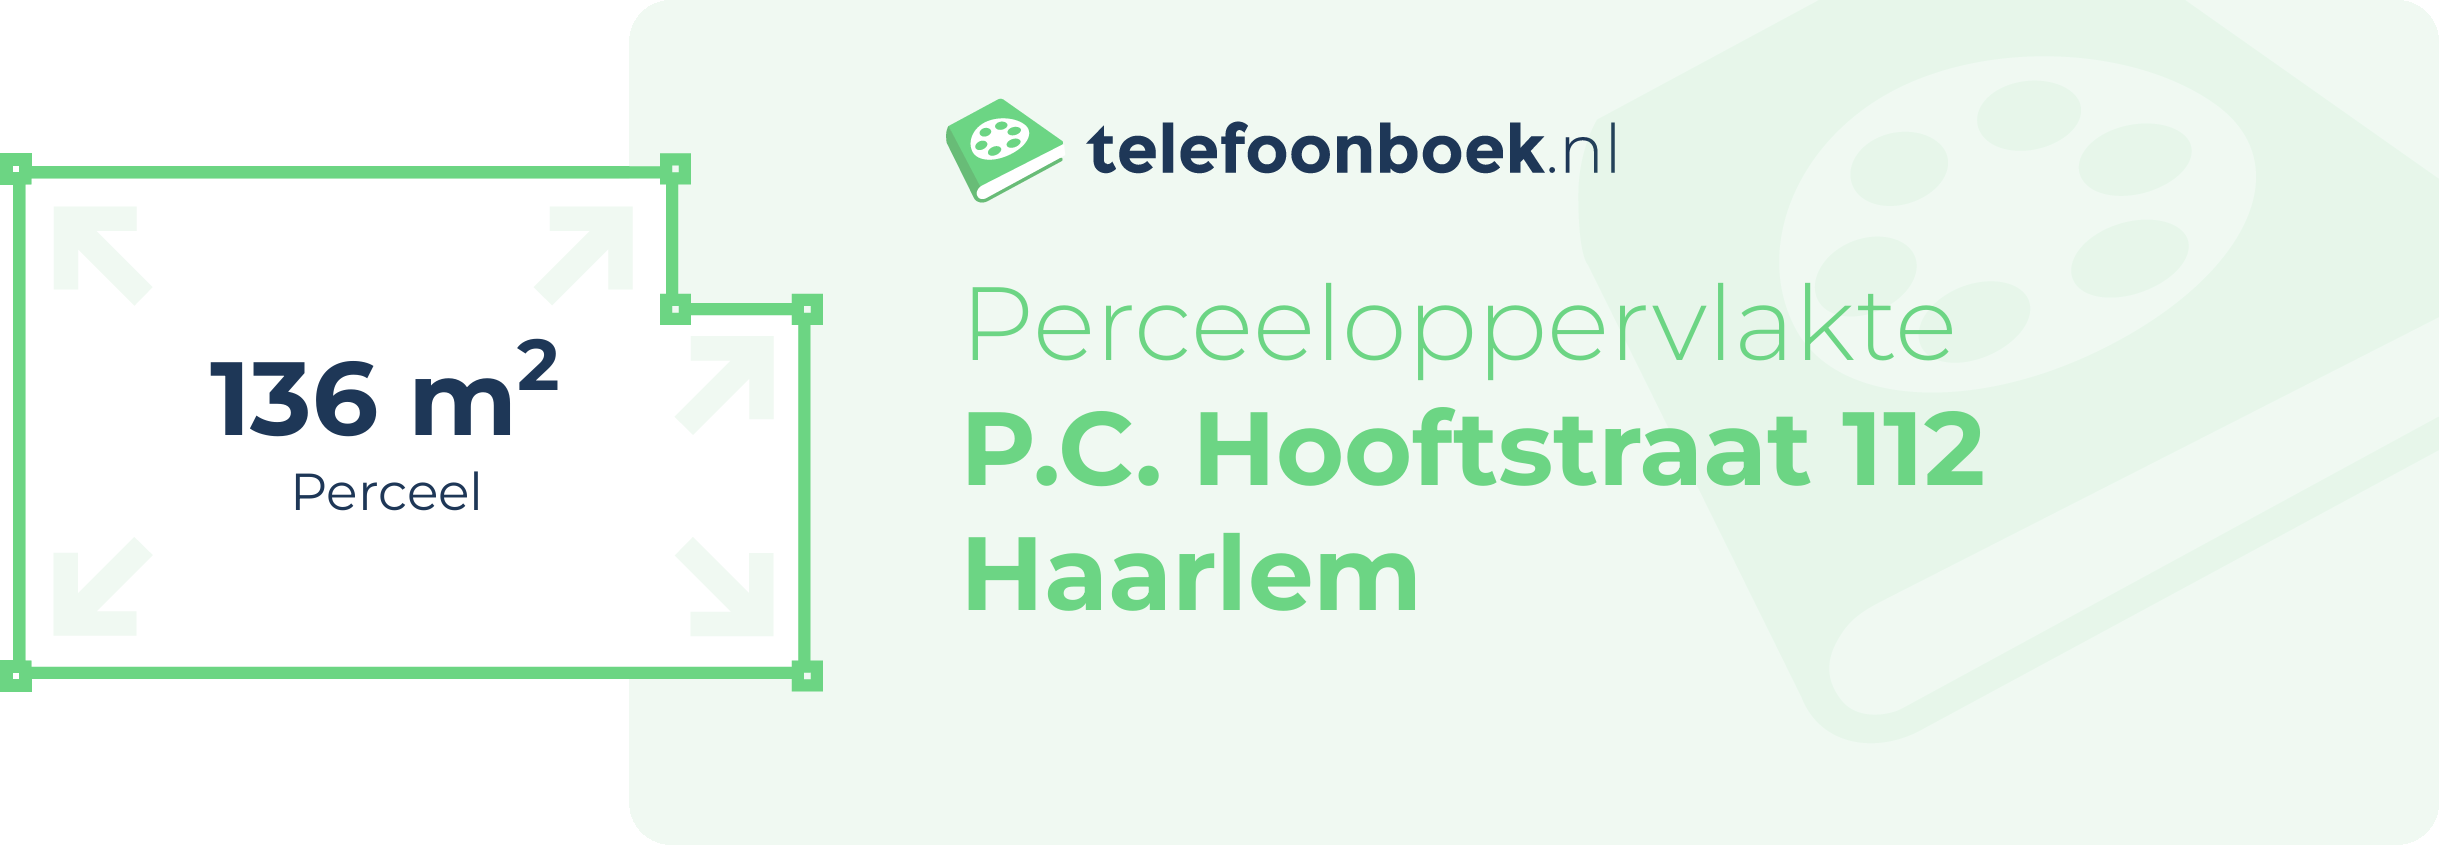 Perceeloppervlakte P.C. Hooftstraat 112 Haarlem